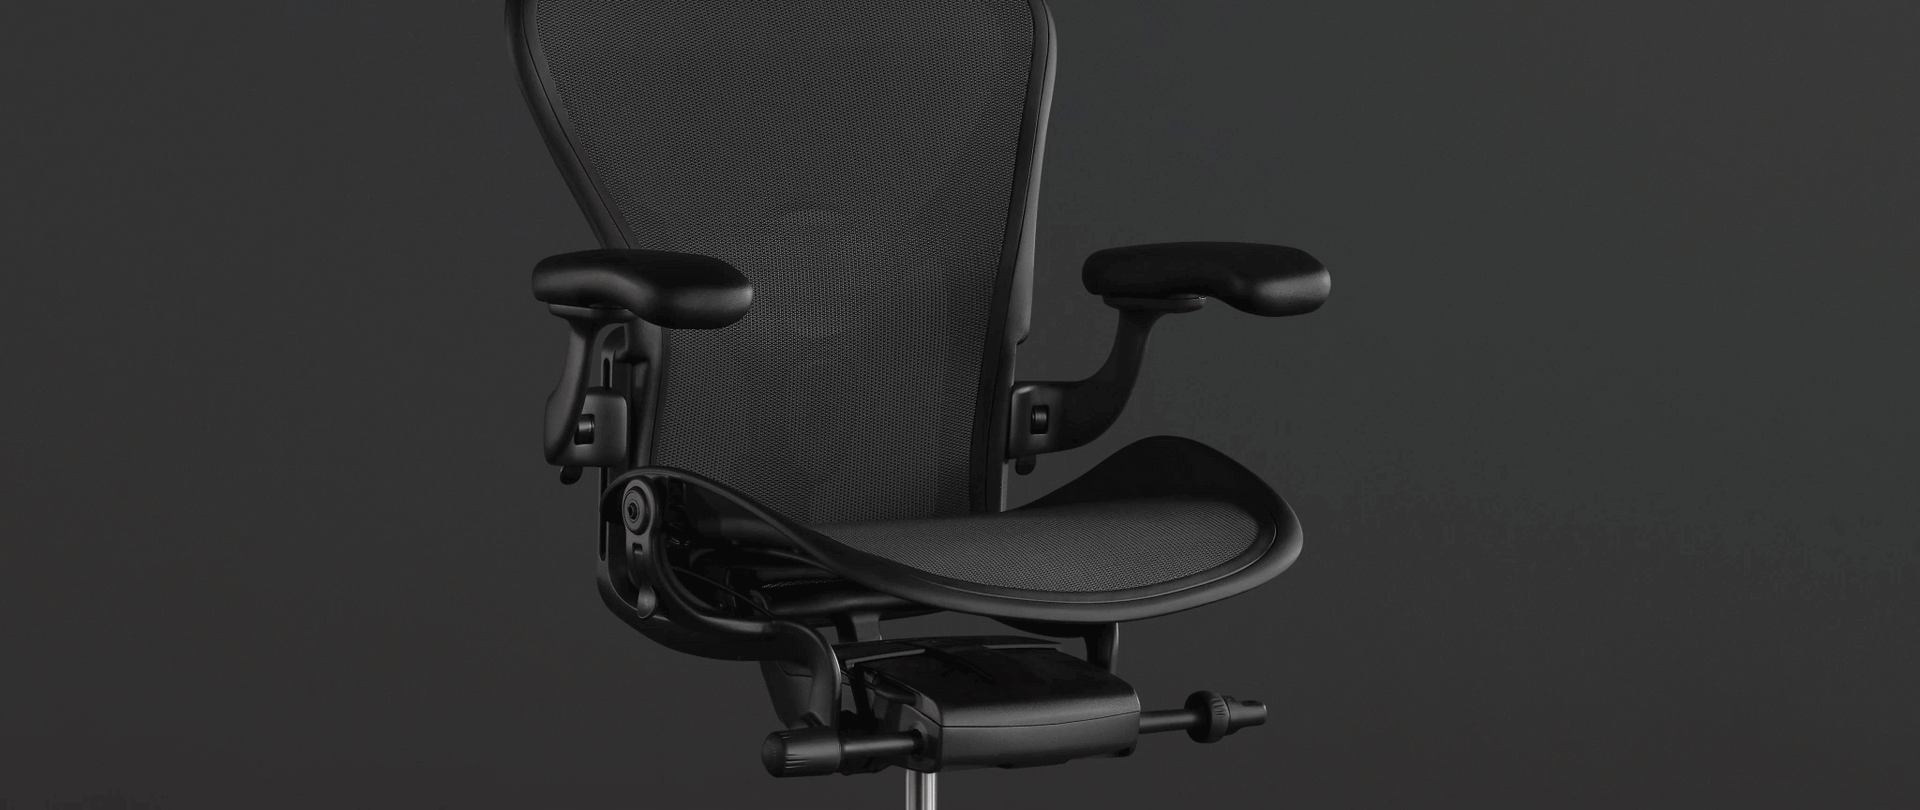 SITZ MIT  BELÜFTUNGAnimation vor einem Foto des Aeron Stuhls in Schwarz zeigt, wie 8Z Pellicle eine belüftete Sitzfläche bildet, die beim Gamen frisch hält.